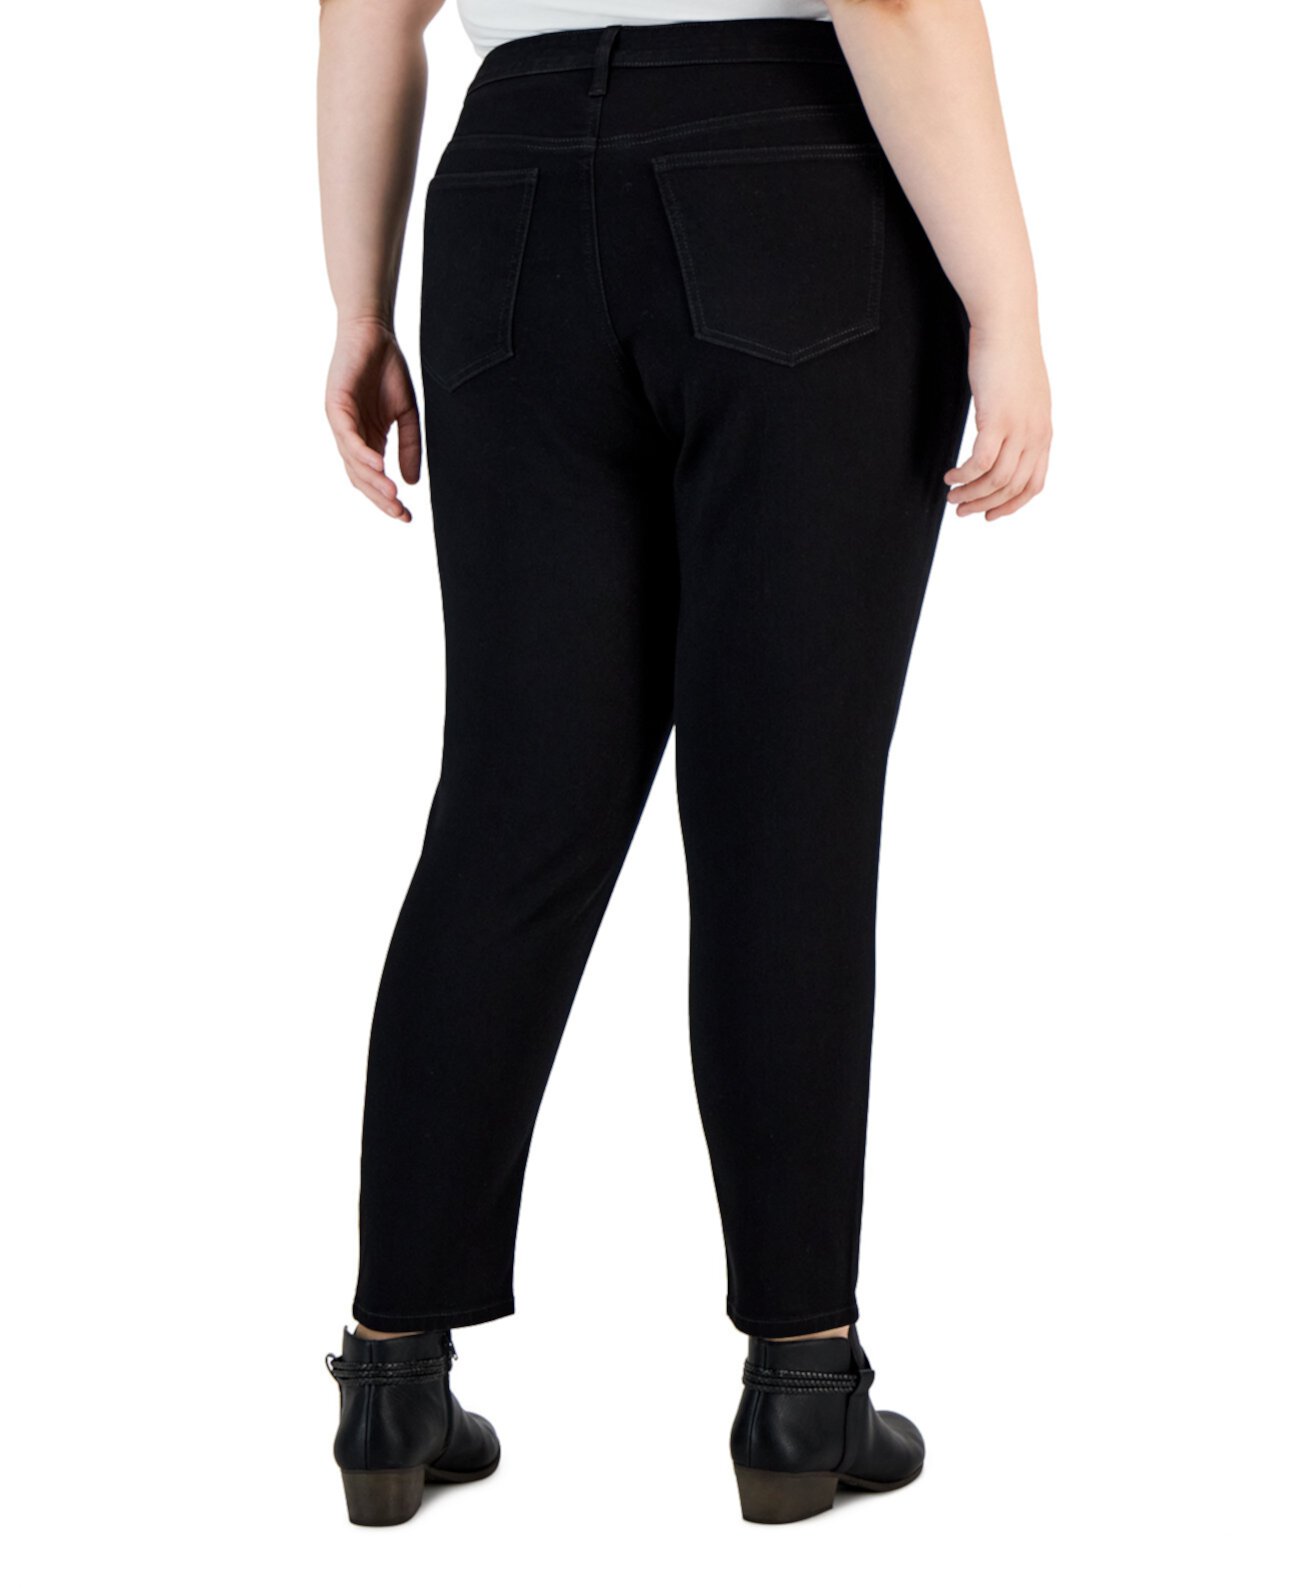 Пышные джинсы скинни большого размера со средней посадкой, созданные для Macy's Style & Co